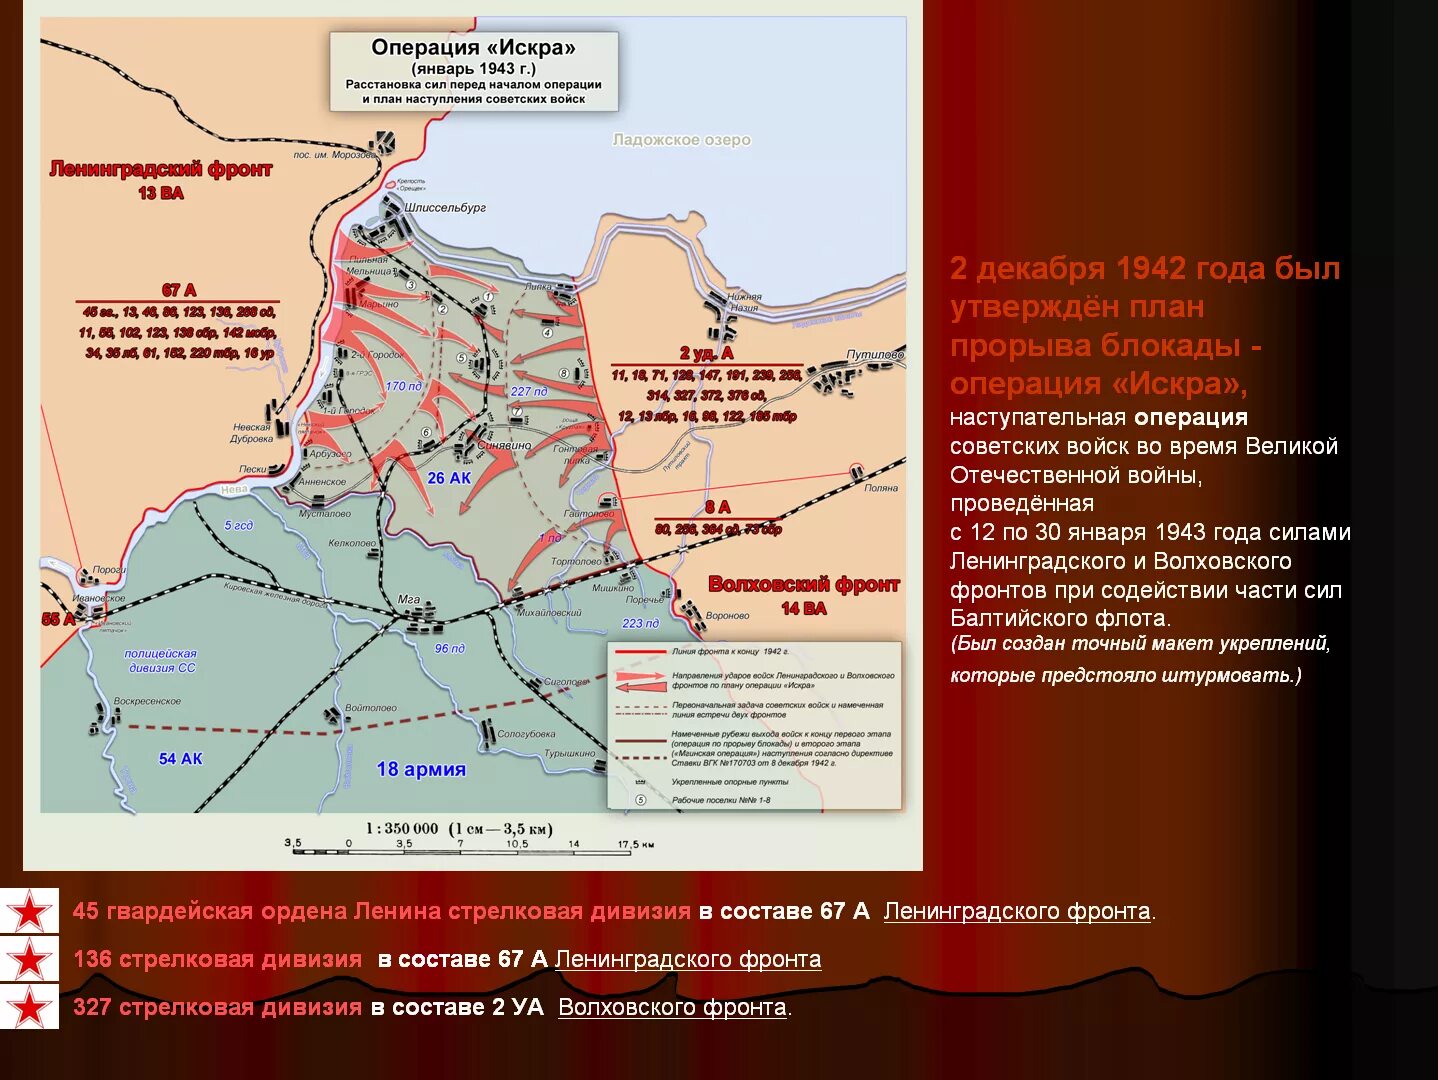 Прорыв блокады название операции. Прорыв блокады Ленинграда (12–30 января 1943). Карта прорыва блокады Ленинграда в 1943 году.